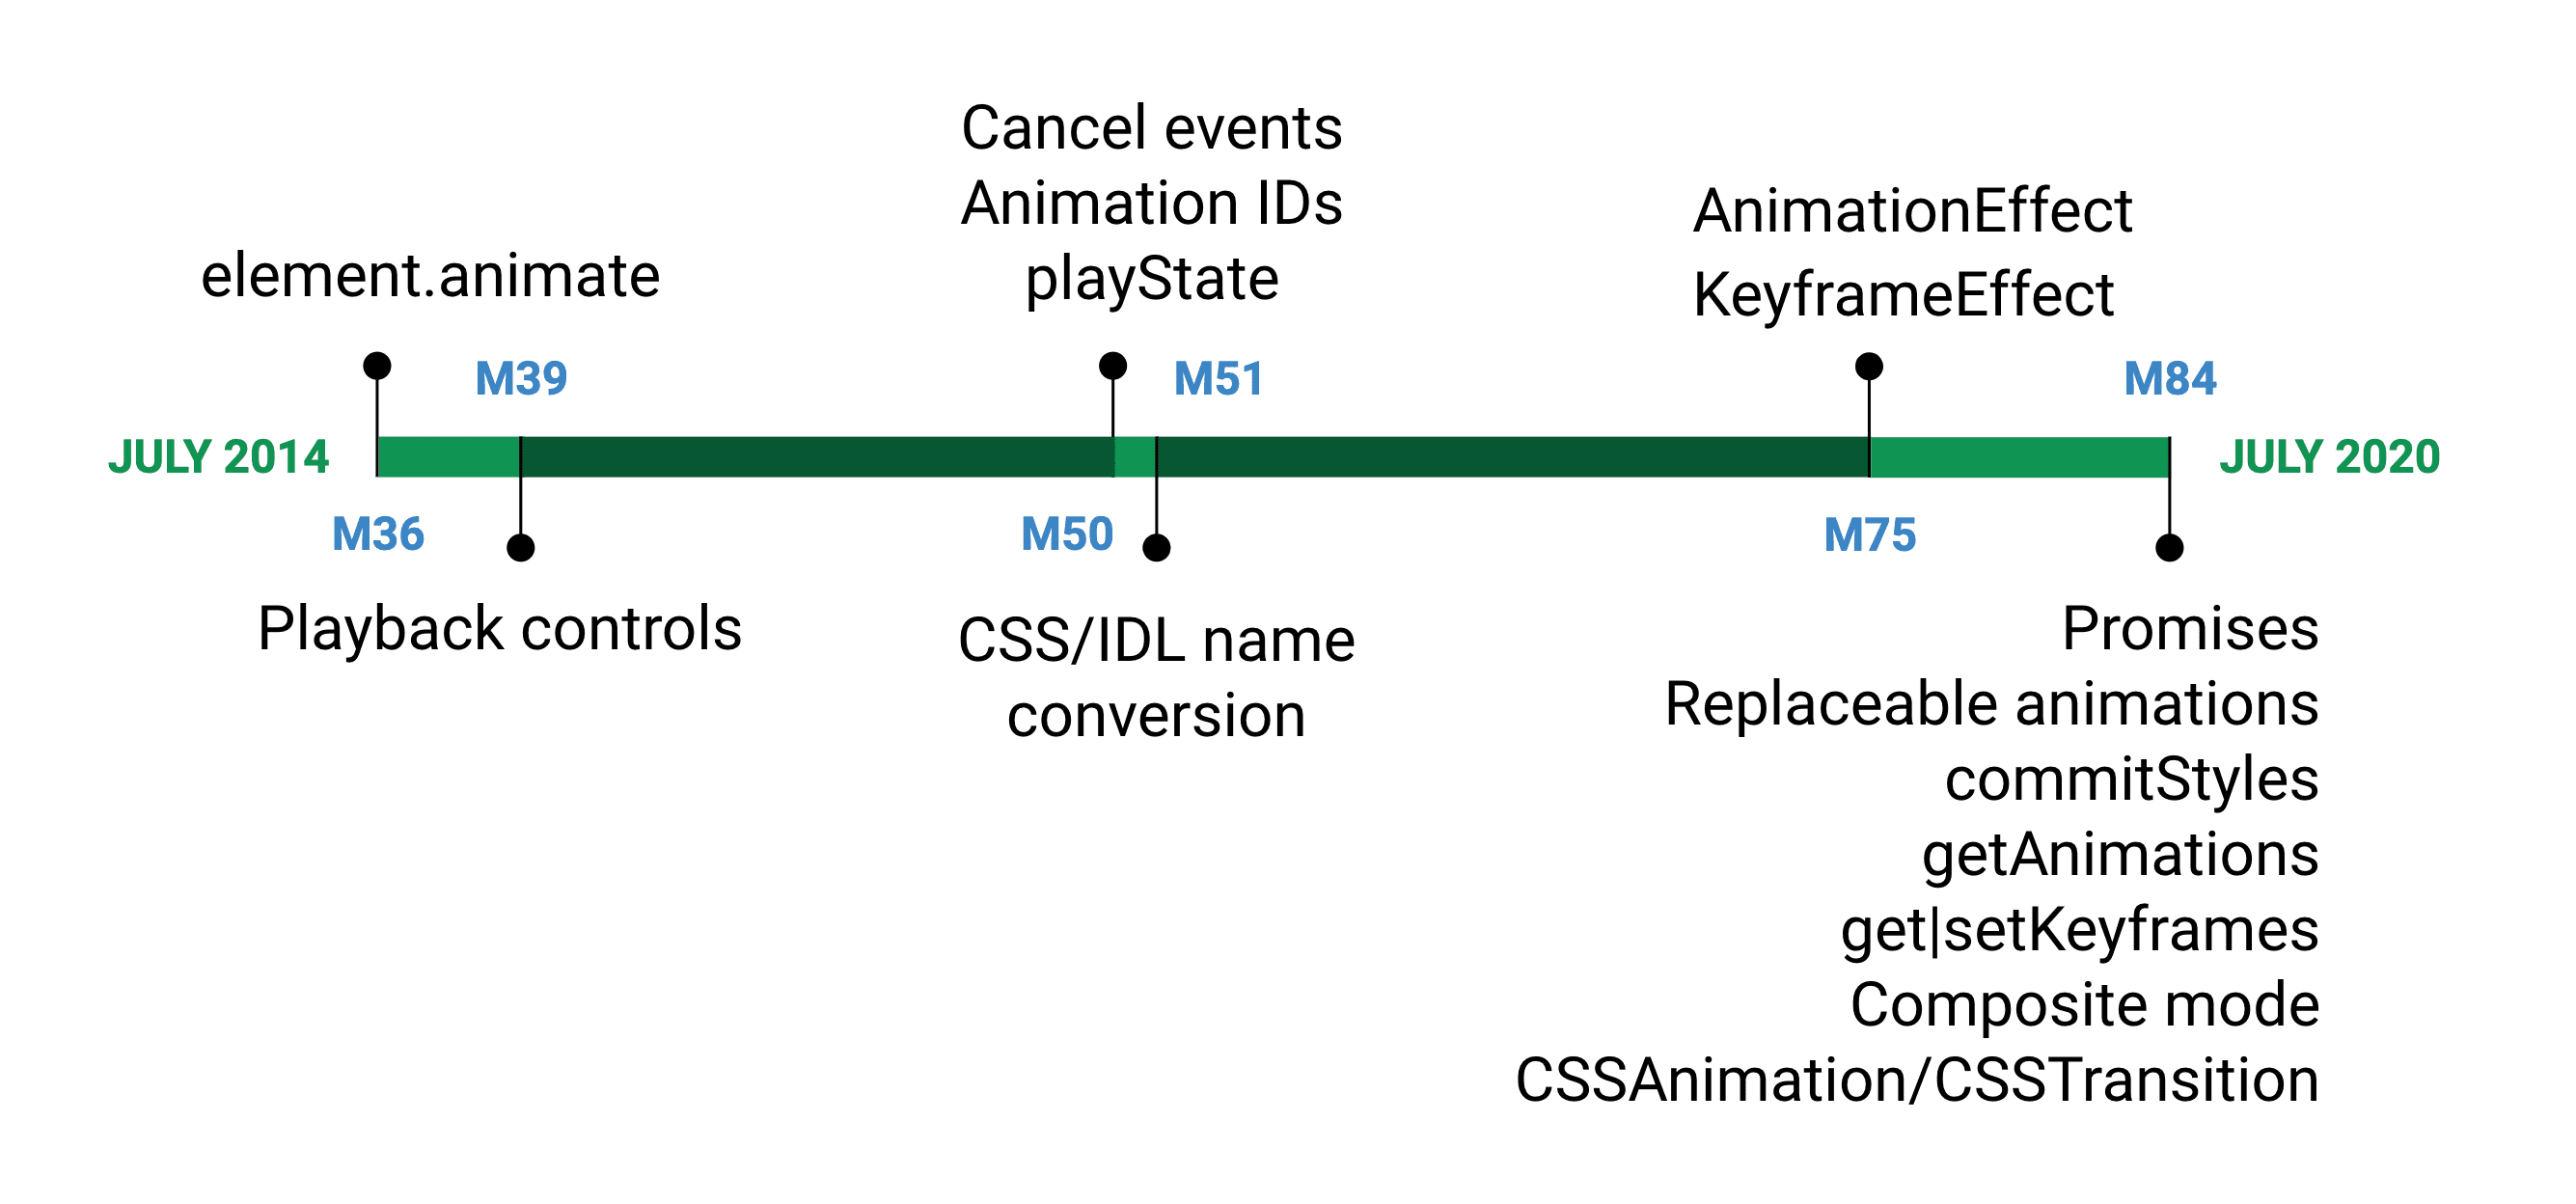 वेब ऐनिमेशन एपीआई ने पहली बार Chromium के वर्शन 36, जुलाई 2014 में काम किया. अब इस स्पेसिफ़िकेशन के पूरा होने की तारीख, जुलाई 2020 को लॉन्च होगी. इसका वर्शन 84 है.